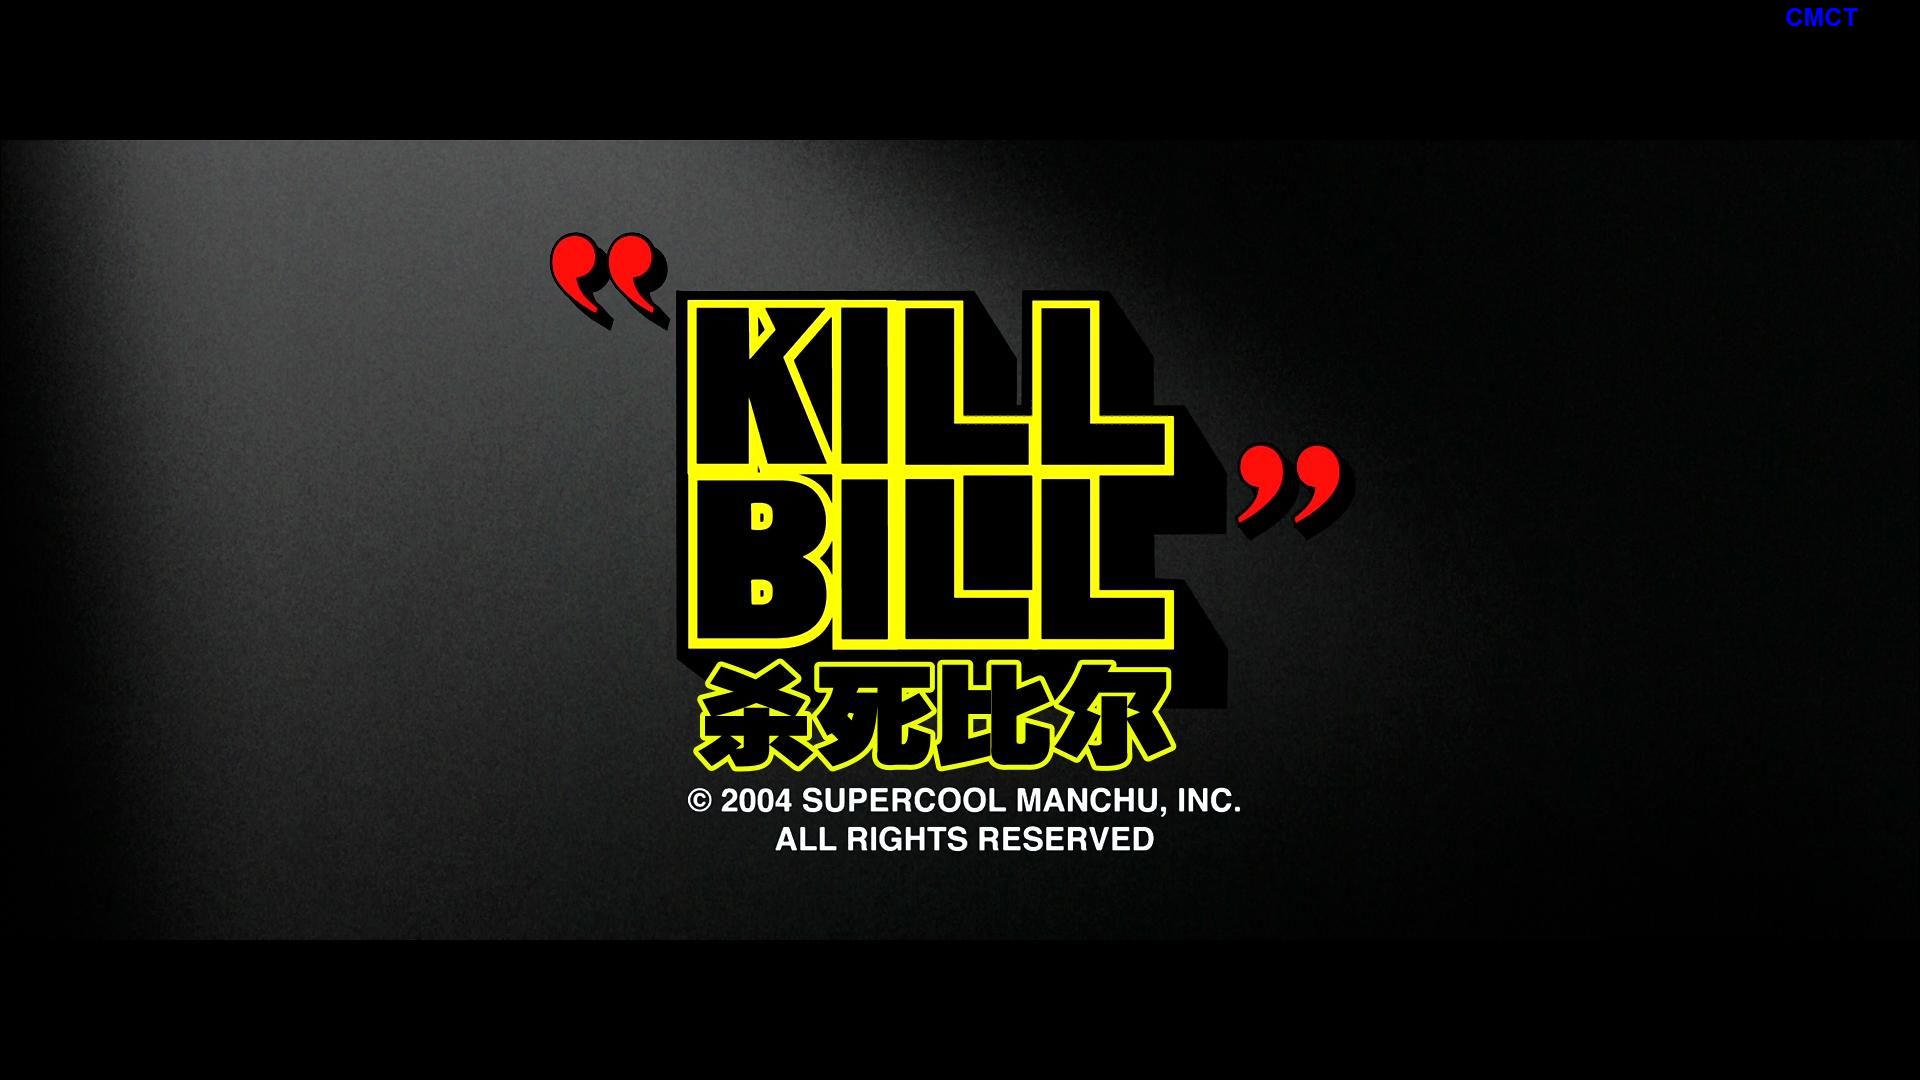 杀死比尔ⅠⅡ合集 [美版原盘DIY] [简/繁/双语特效字幕] IMDB Top 250 #151 Kill.Bill.Vol1-2.2003-2004.Blu-ray.1080p.AVC.LPCM5.1-CMCT    [73.76 GB]-28.jpg